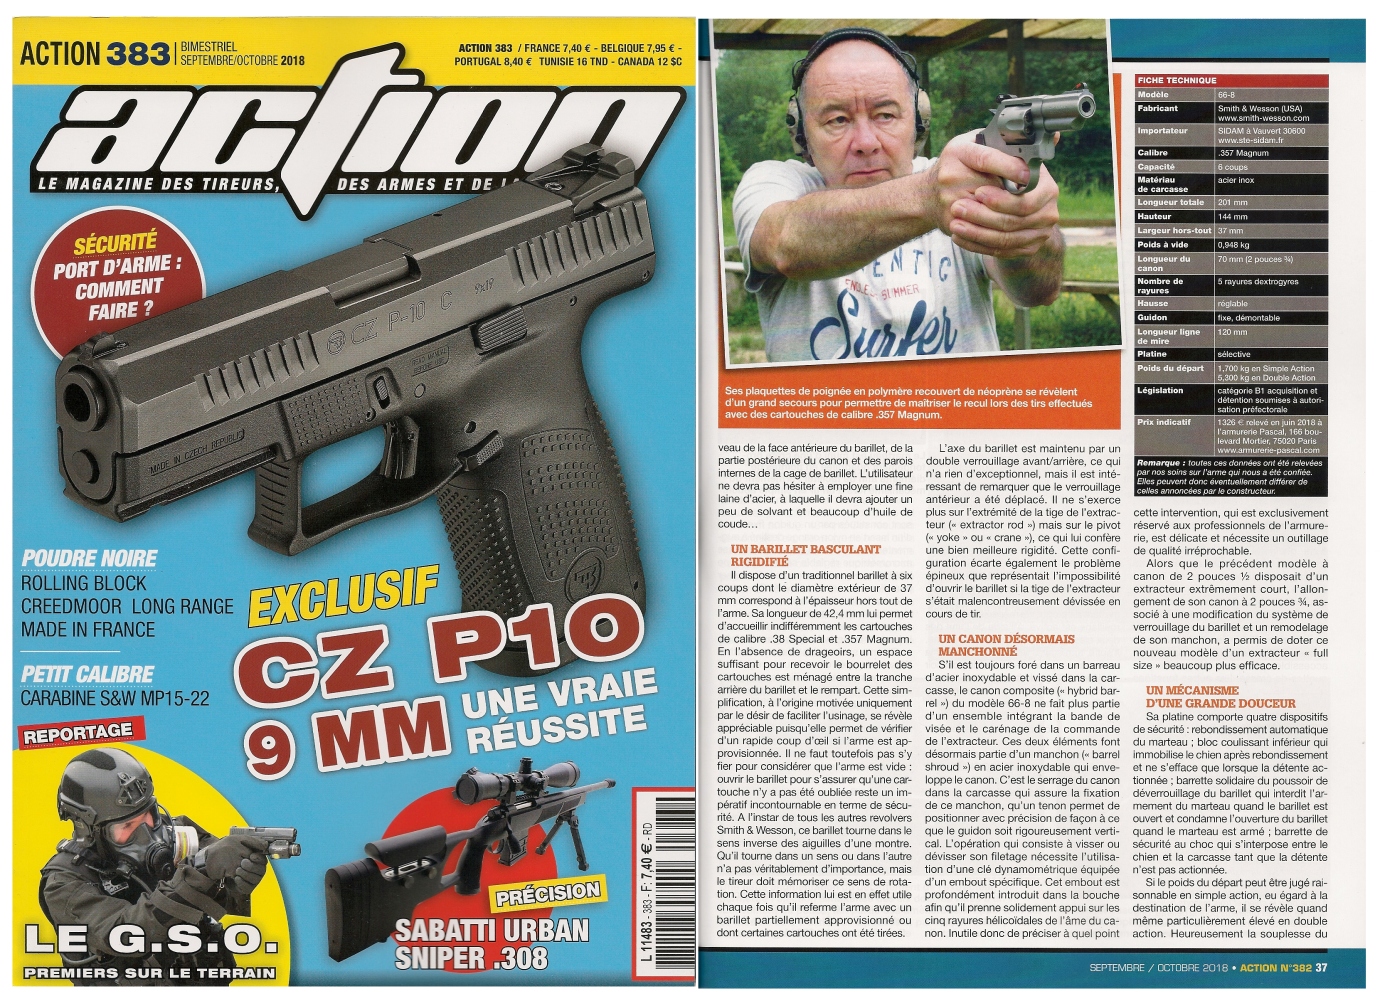 Le banc d’essai du revolver S&W modèle 66-8 Combat Magnum a été publié sur 5 pages dans le magazine Action n° 383 (septembre/octobre 2018). 